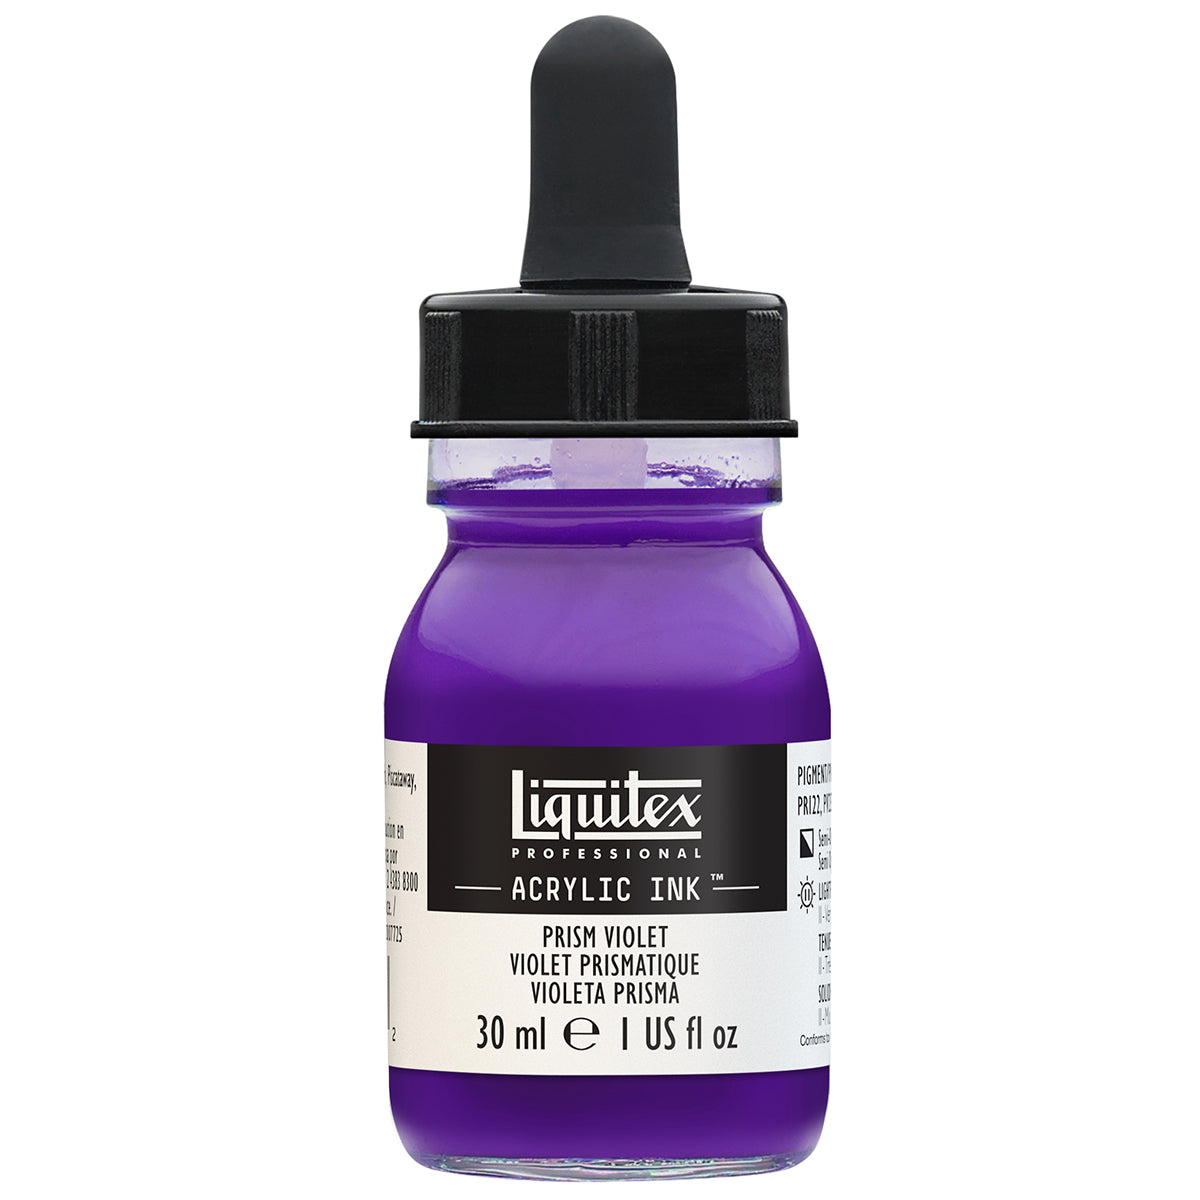 Liquitex-inchiostro acrilico-30ml Prisma viola